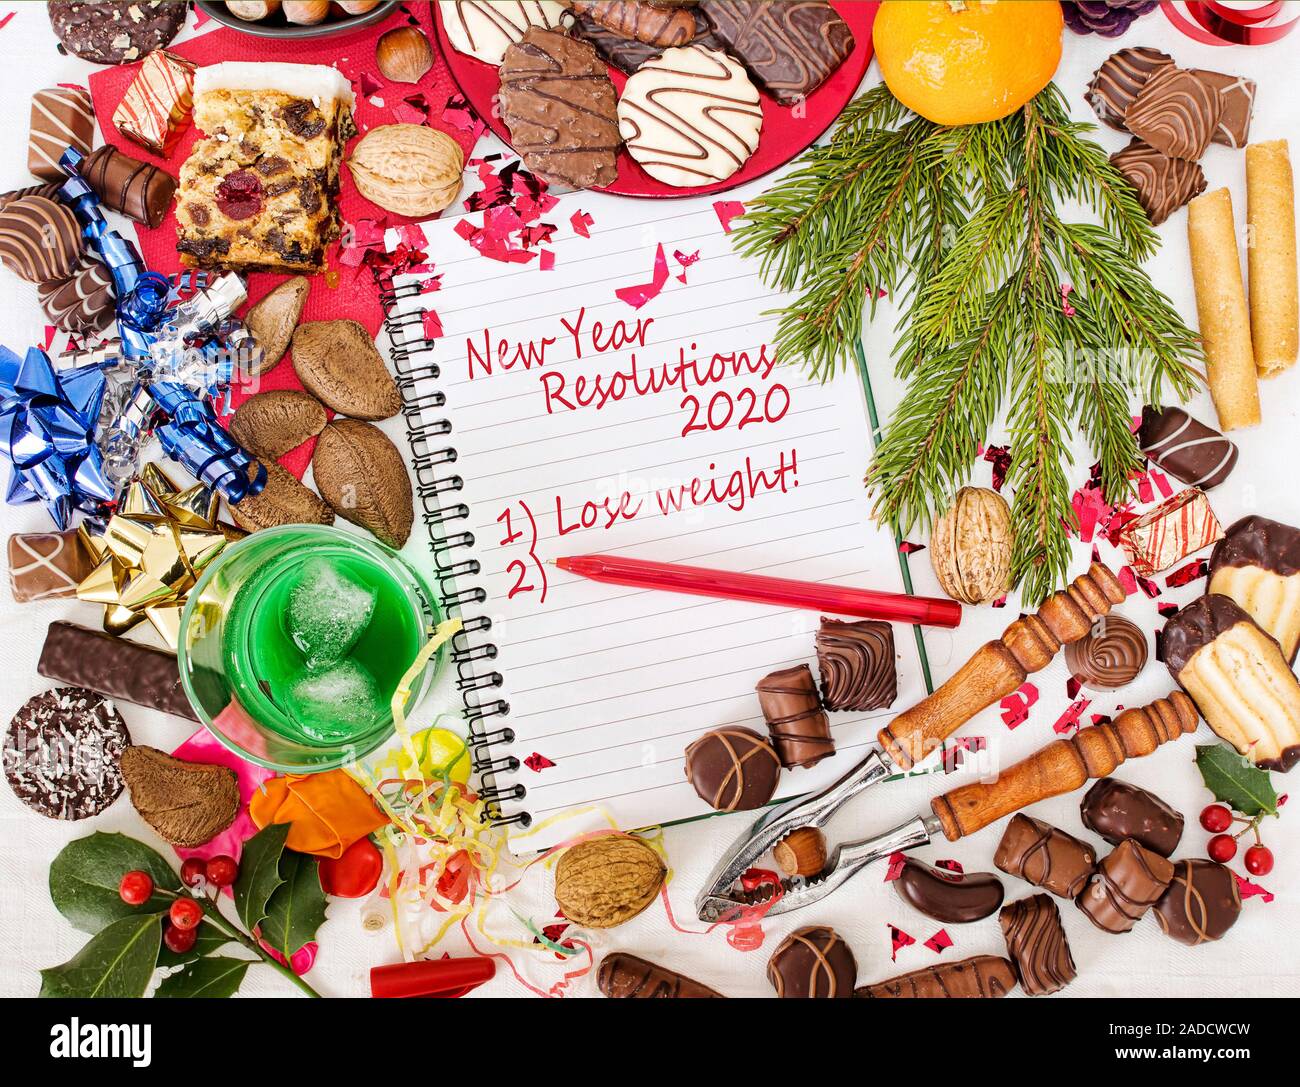 Natale 2020 Pranzo.Pranzo Di Natale Festa E Nuovo Anno Risoluzione Alla Dieta 2020 Foto Stock Alamy